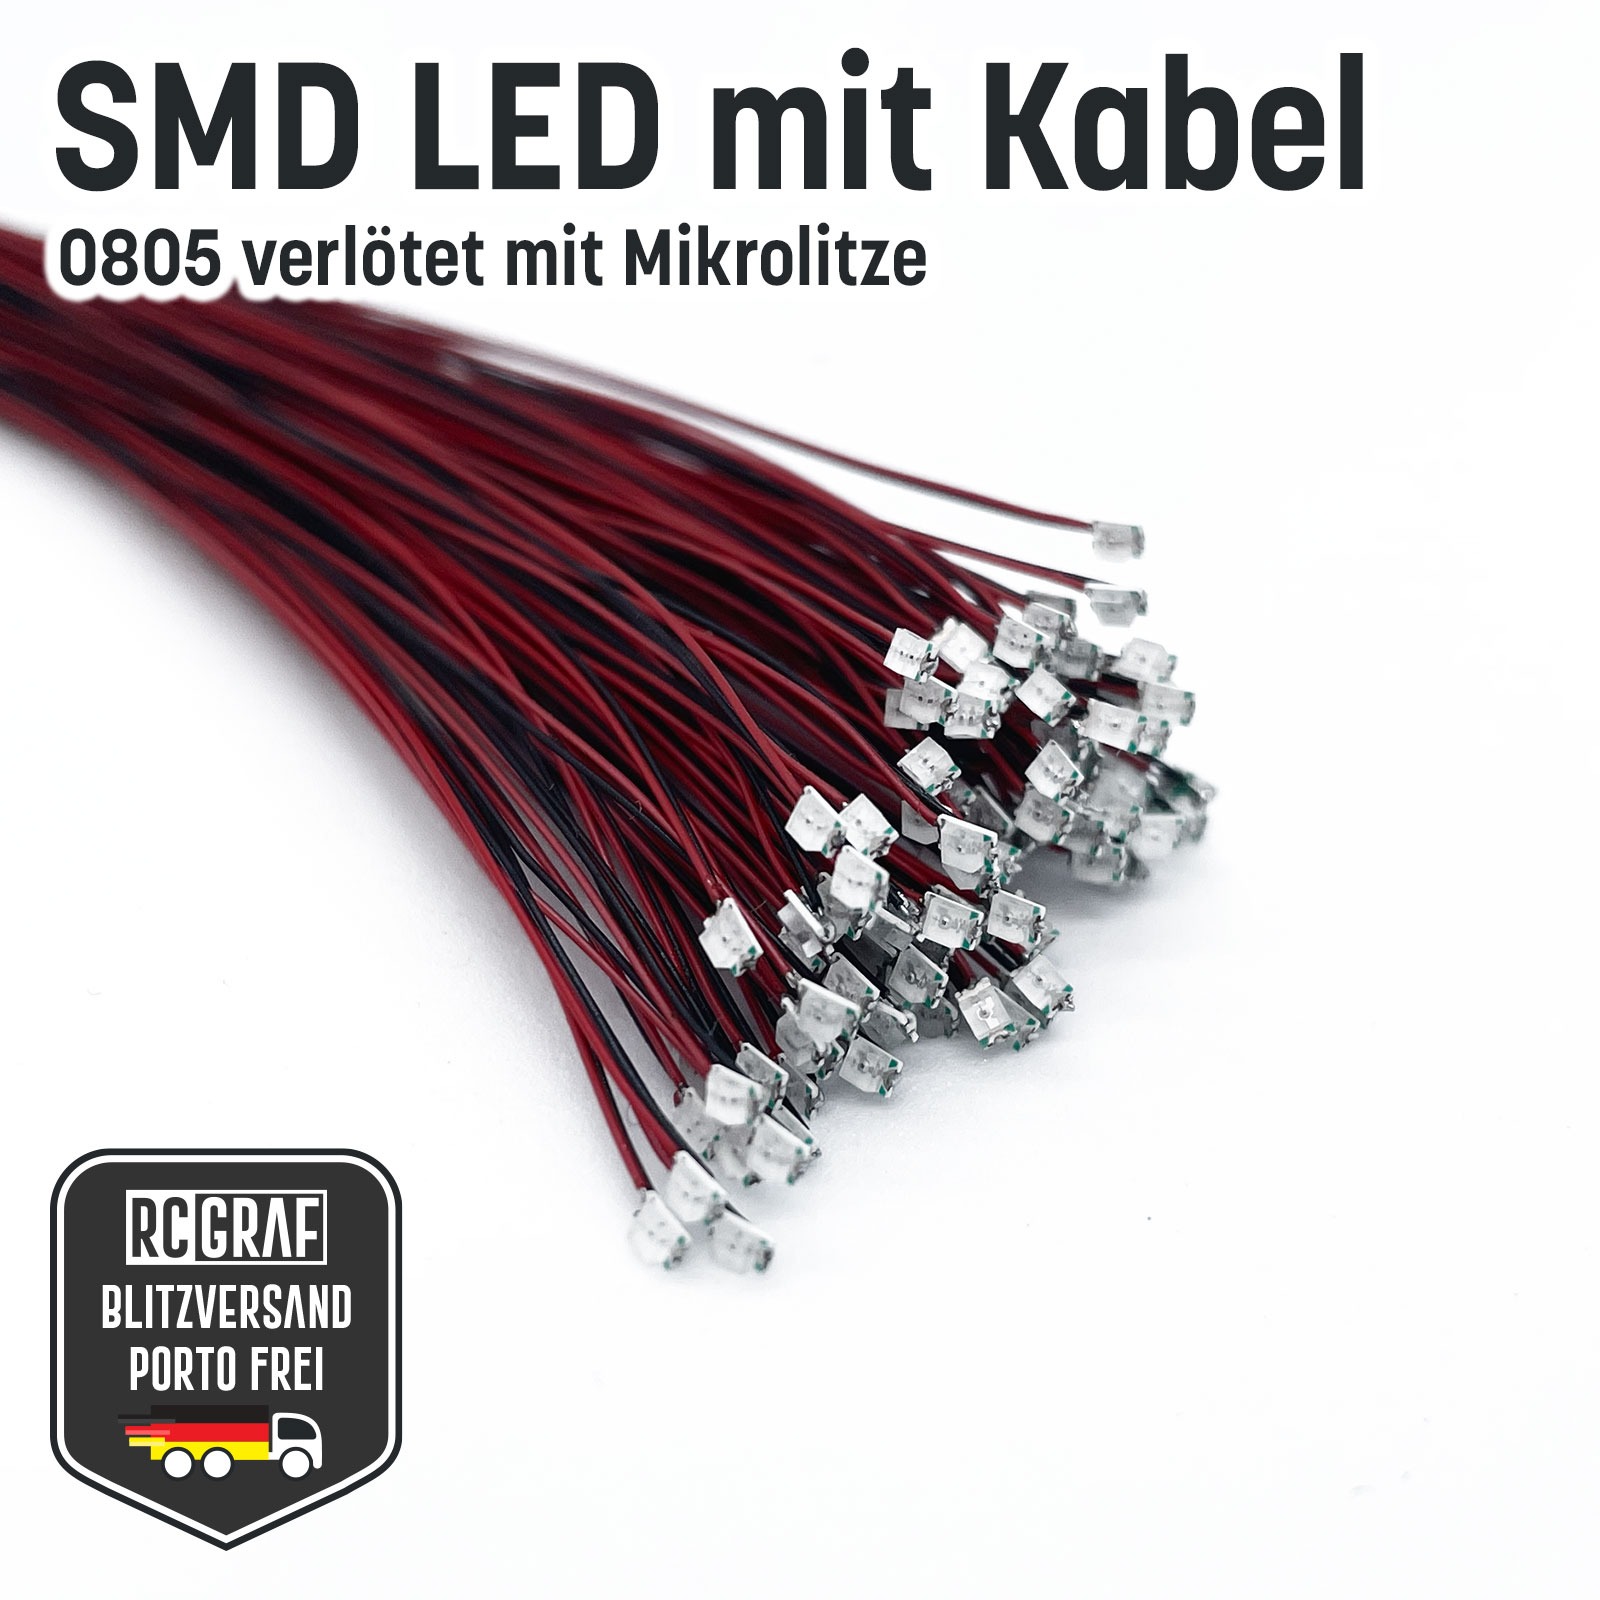 SMD LED 0805 Microlitze 30cm verlötet